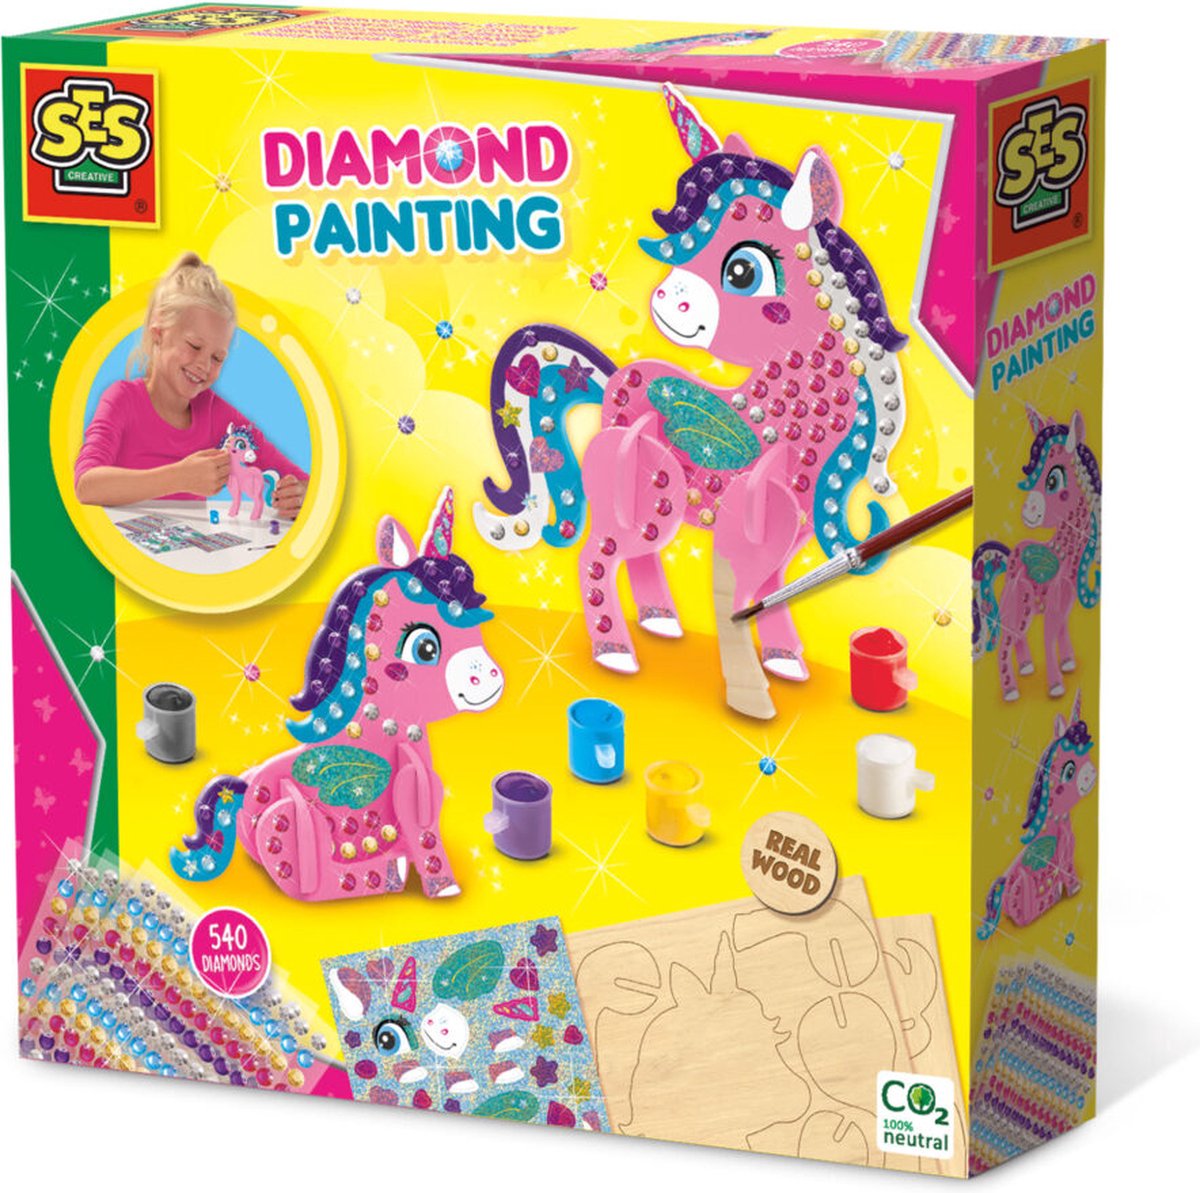   - Diamond painting - 3D Unicorns - houten eenhoorns - 540 diamant stickers - met glitterstickers